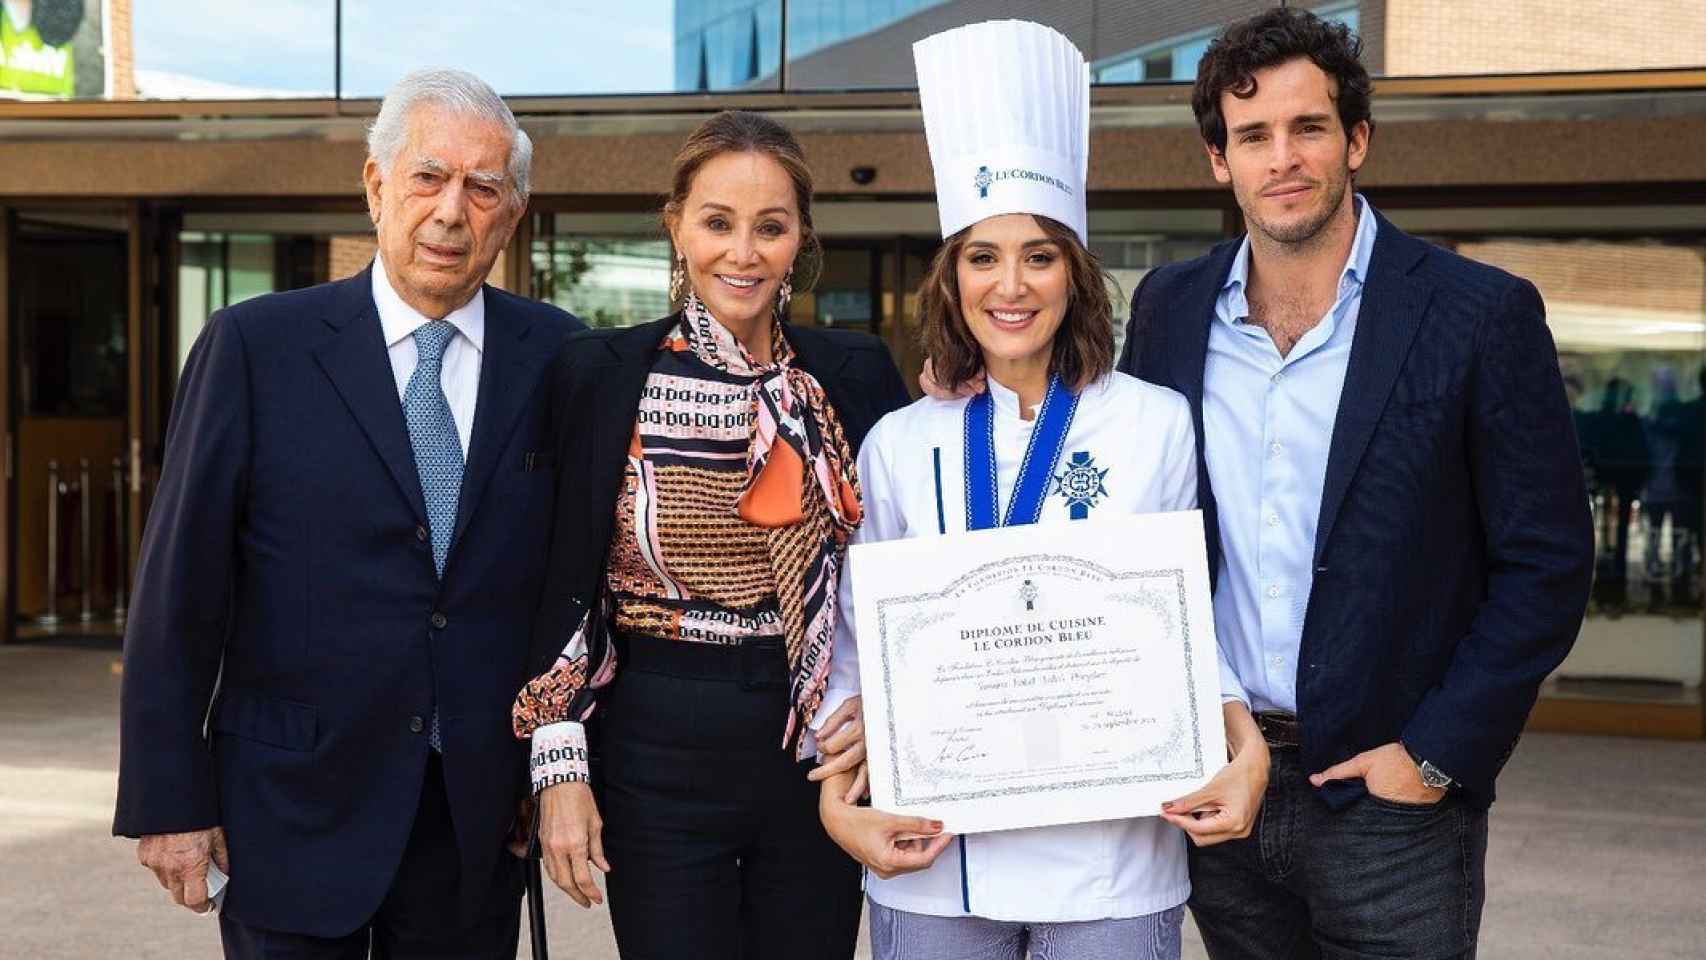 Tamara se graduó en la prestigiosa escuela de cocina Le Cordon Bleu, evento al que acudió su madre, Mario Vargas Llosa e Íñigo Onieva, novio de la diseñadora.